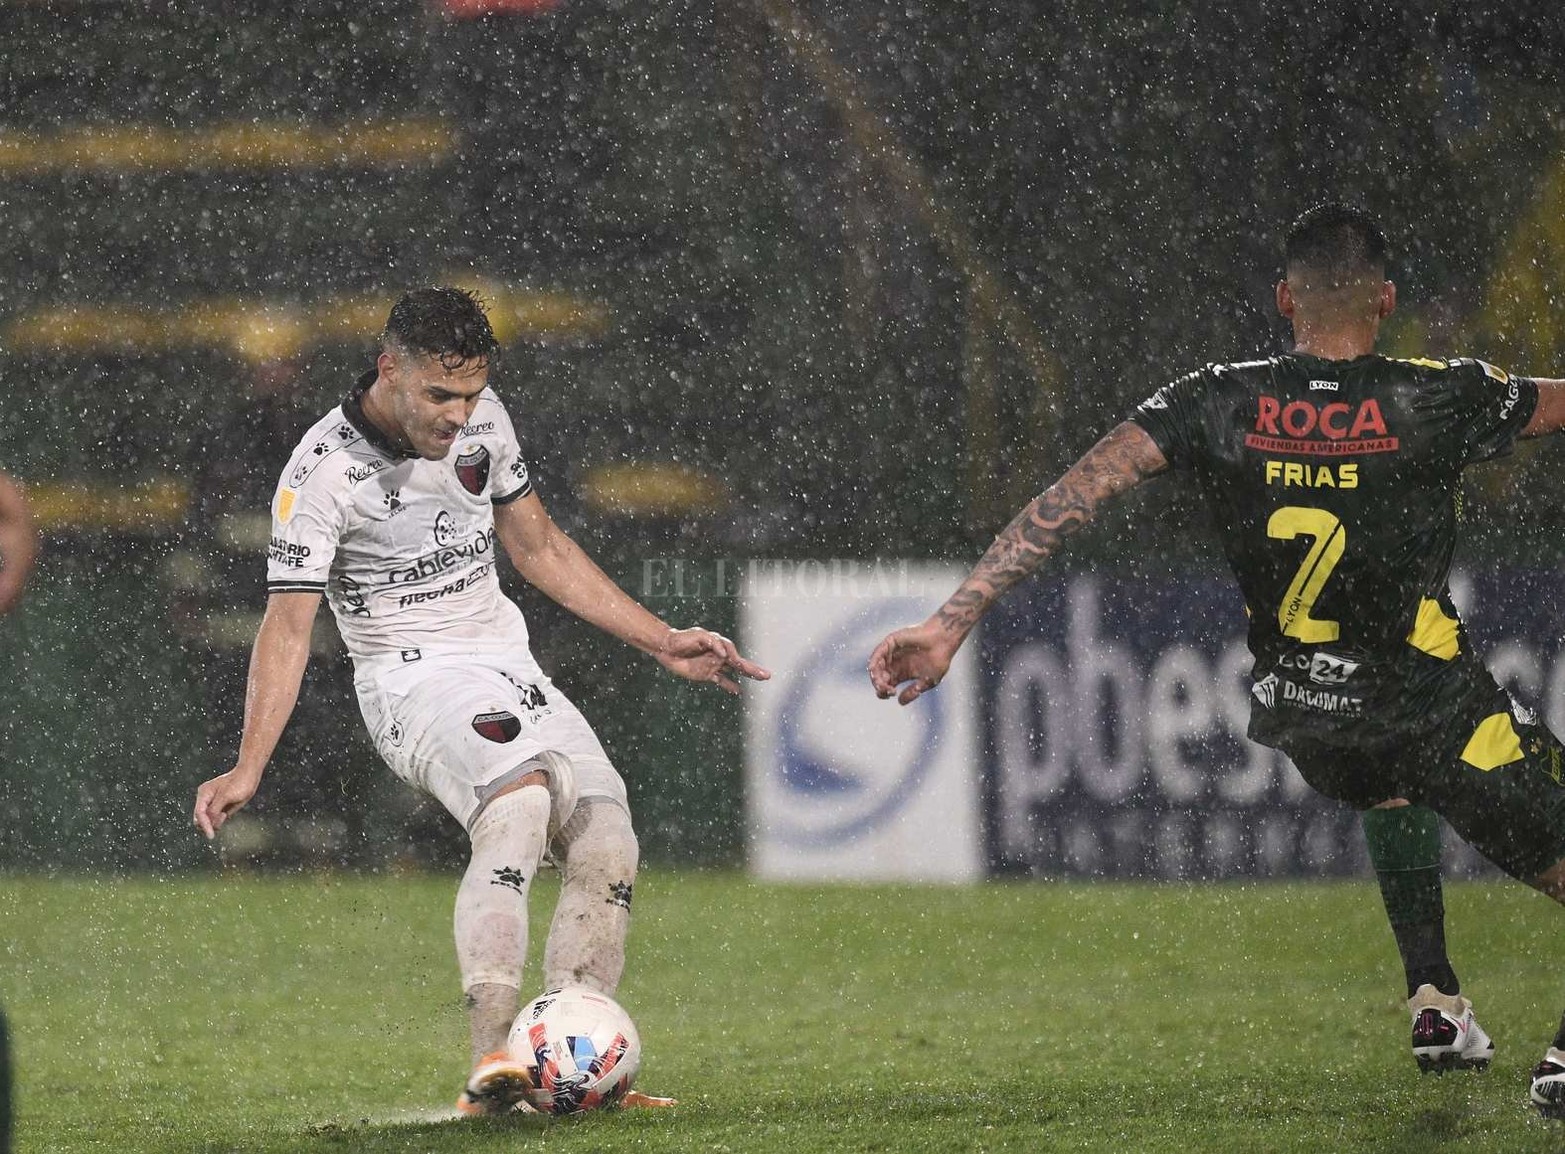 En Buenos Aires, Colón casi le saca el invicto a Defensa y Justicia. Empataron 1 a 1. El partido se jugó bajo la lluvia.